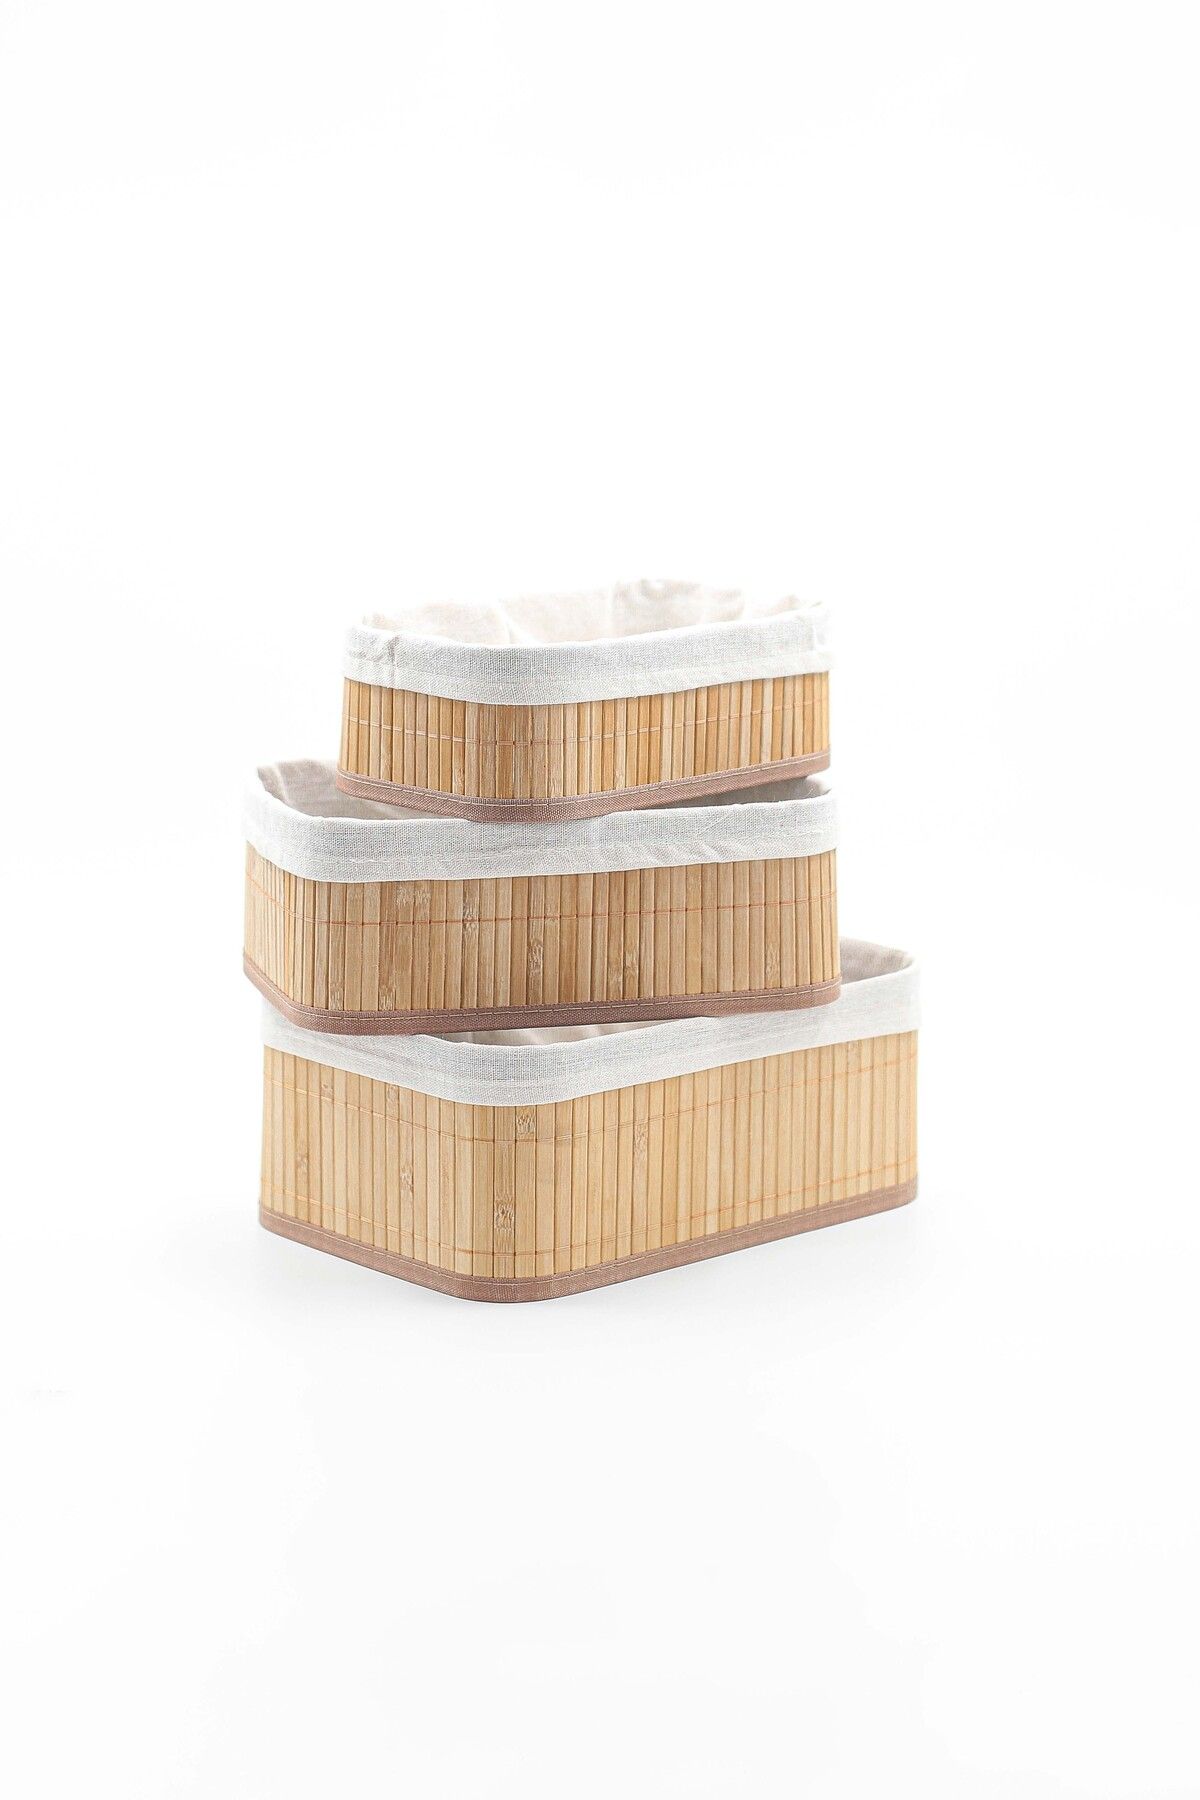 Karçiçeği Home 3'lü Bambu Sepet Naturel Astarlı Çok Amaçlı Saklama Kutusu - Banyo Kozmetik Mutfak Dolap Organizeri